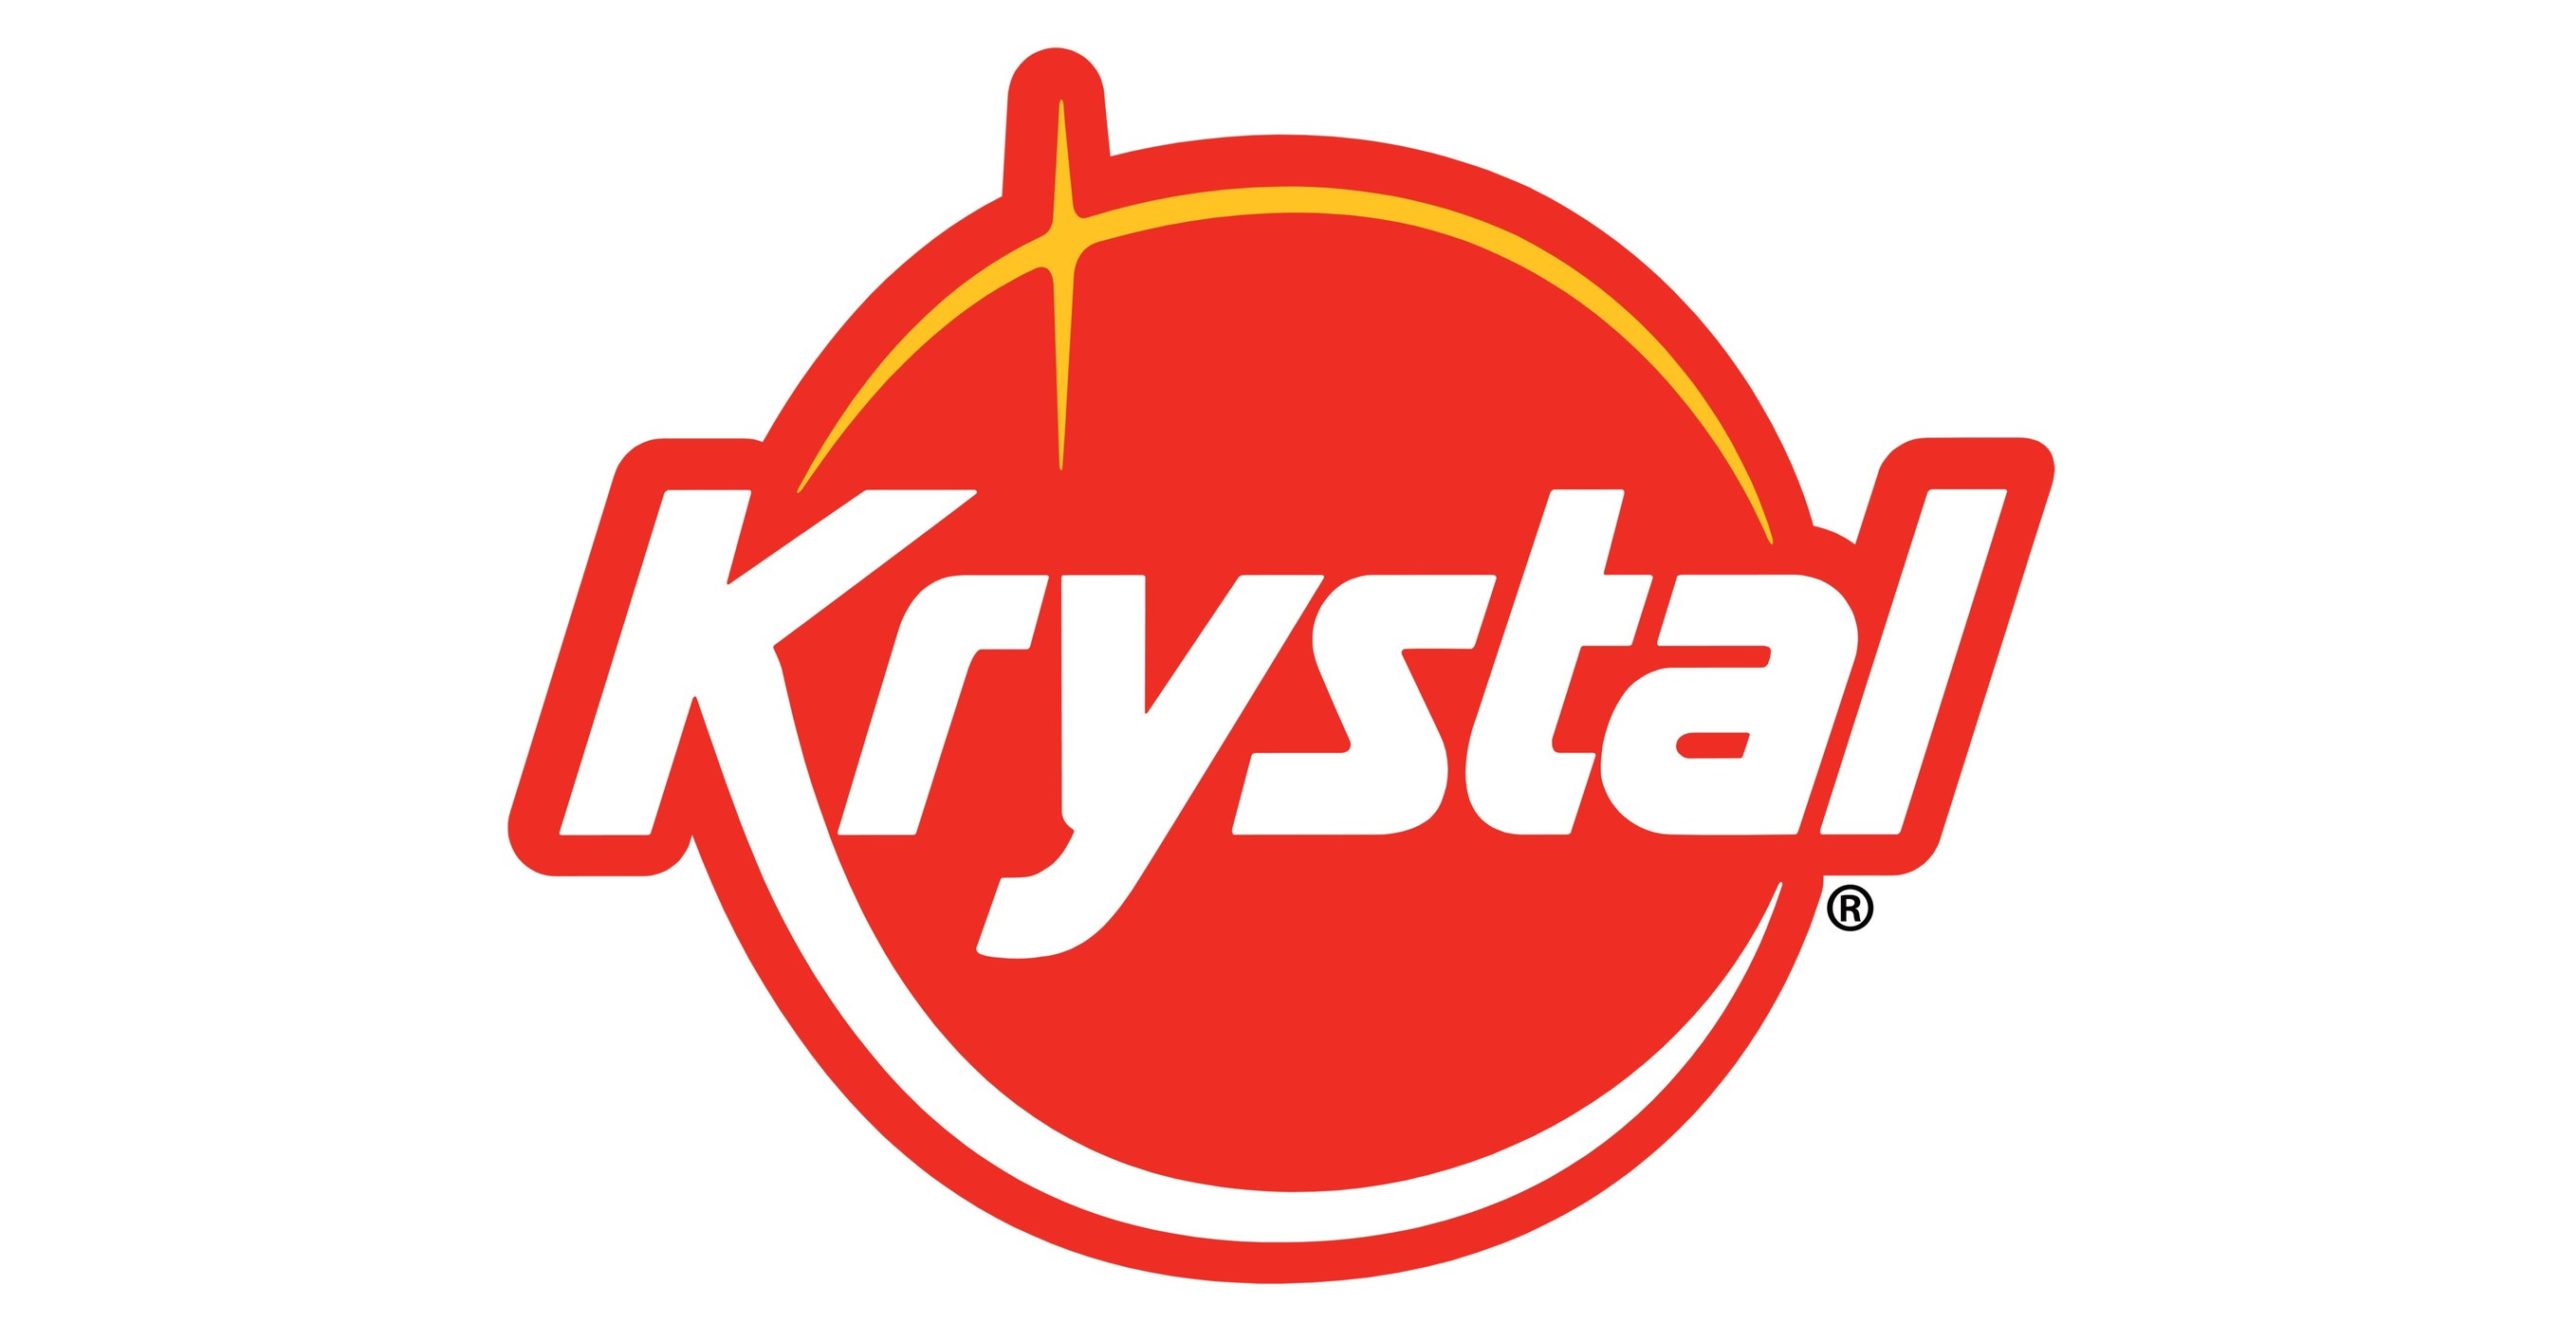 krystal restaurant logo